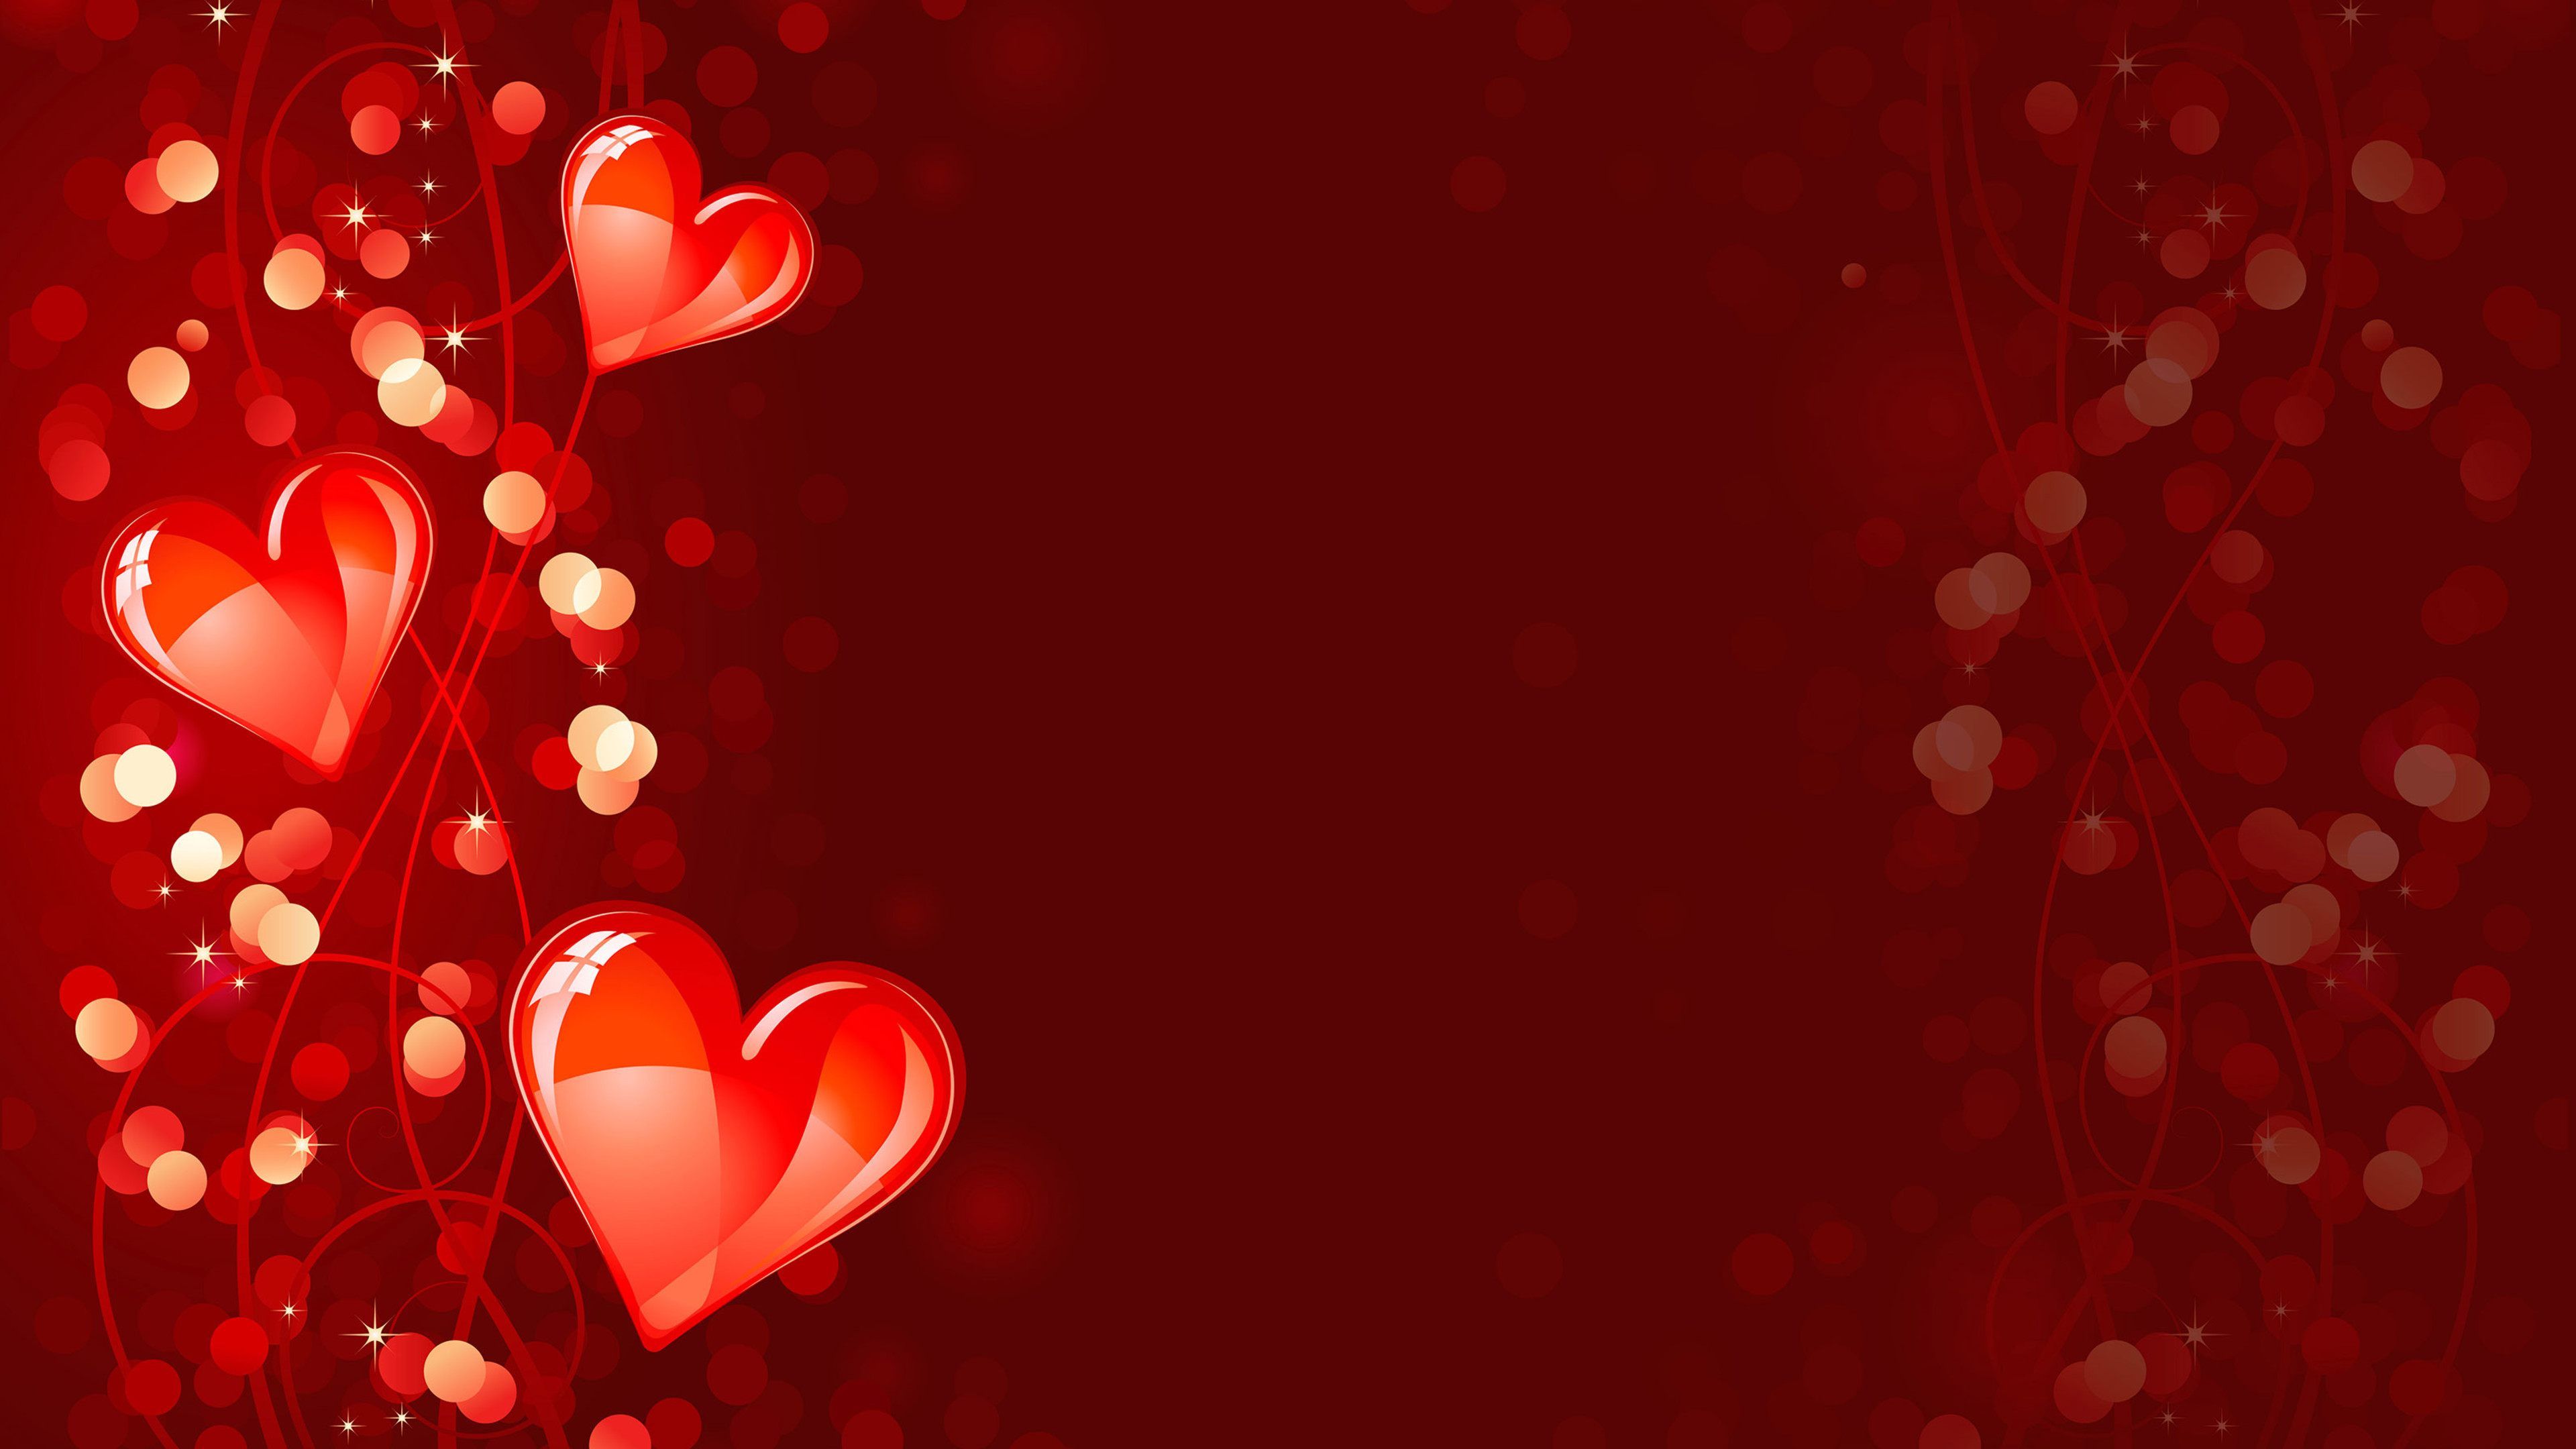 Red Heart Art Water Splash Love Wallpaper - HD Wallpapers & 4K